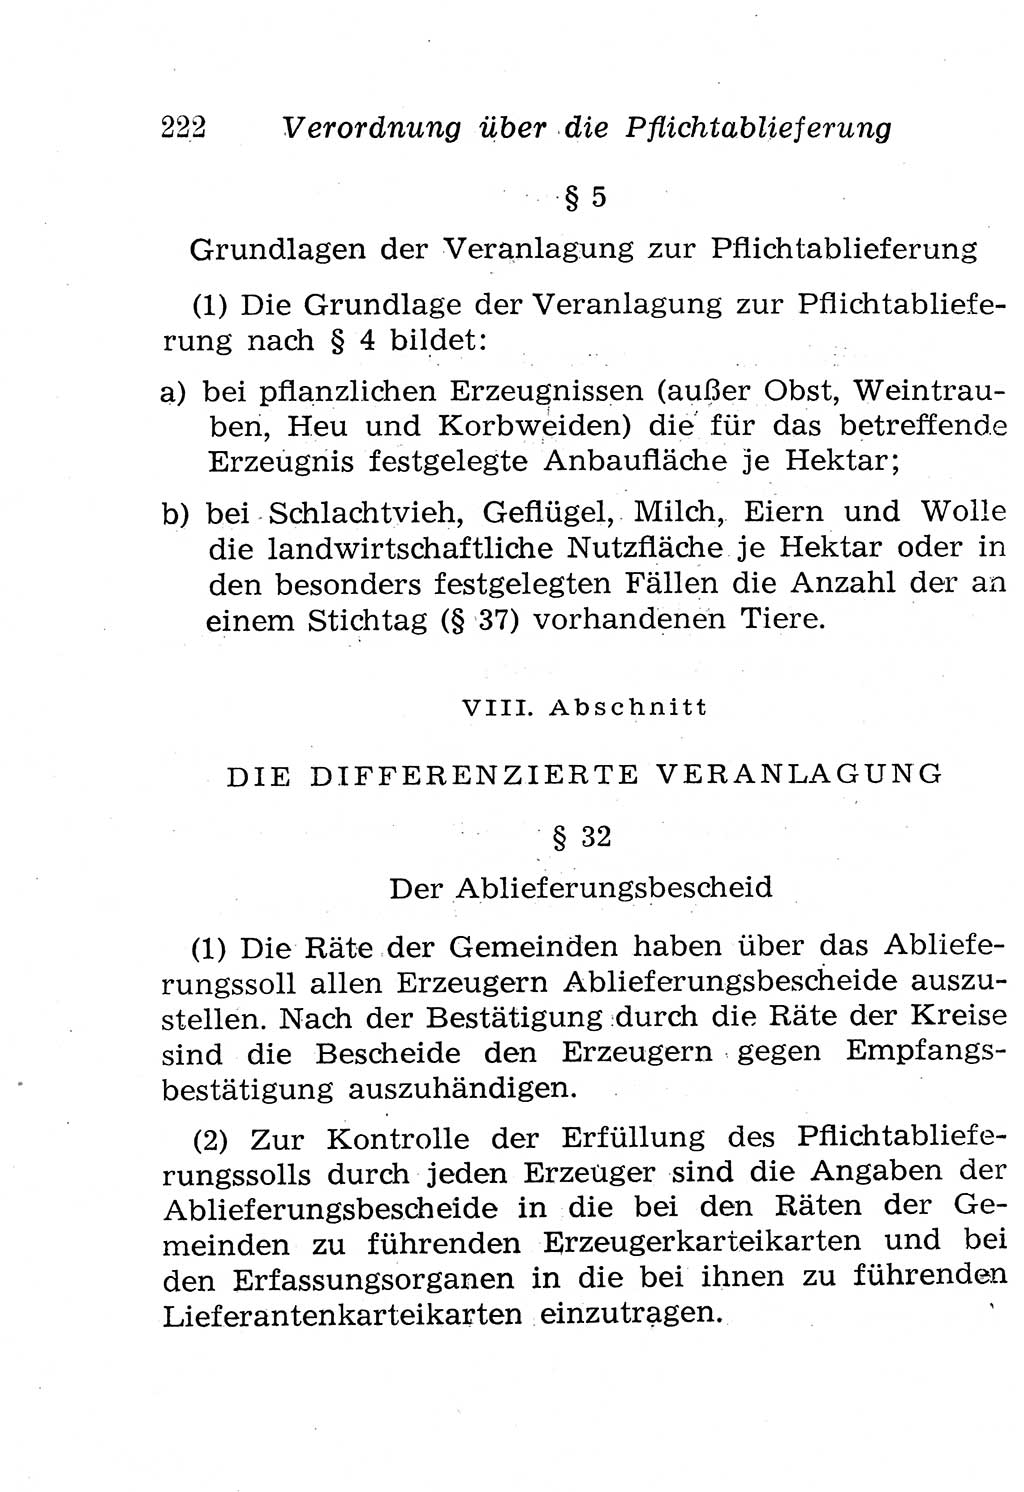 Strafgesetzbuch (StGB) und andere Strafgesetze [Deutsche Demokratische Republik (DDR)] 1958, Seite 222 (StGB Strafges. DDR 1958, S. 222)